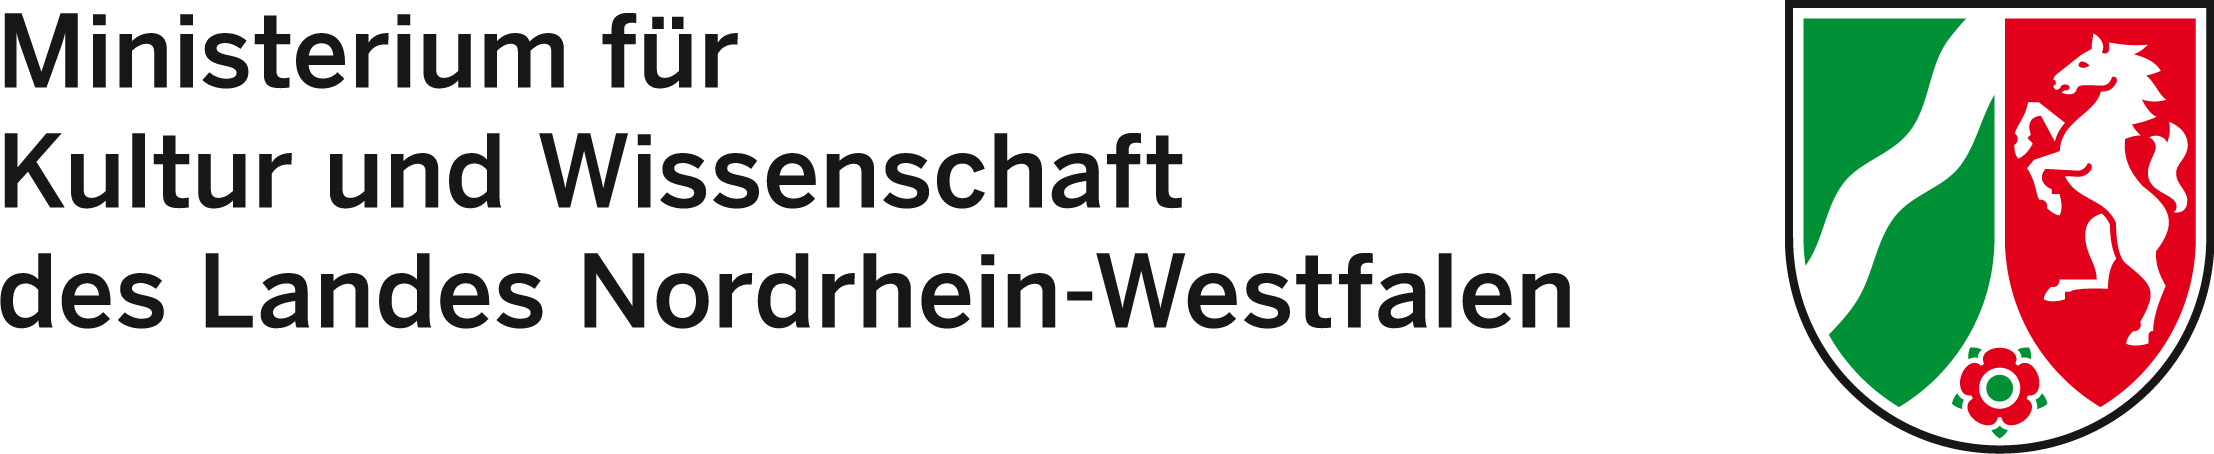 Logos des Düsseldorfer Ministerium für Familie Kultur und Bildung